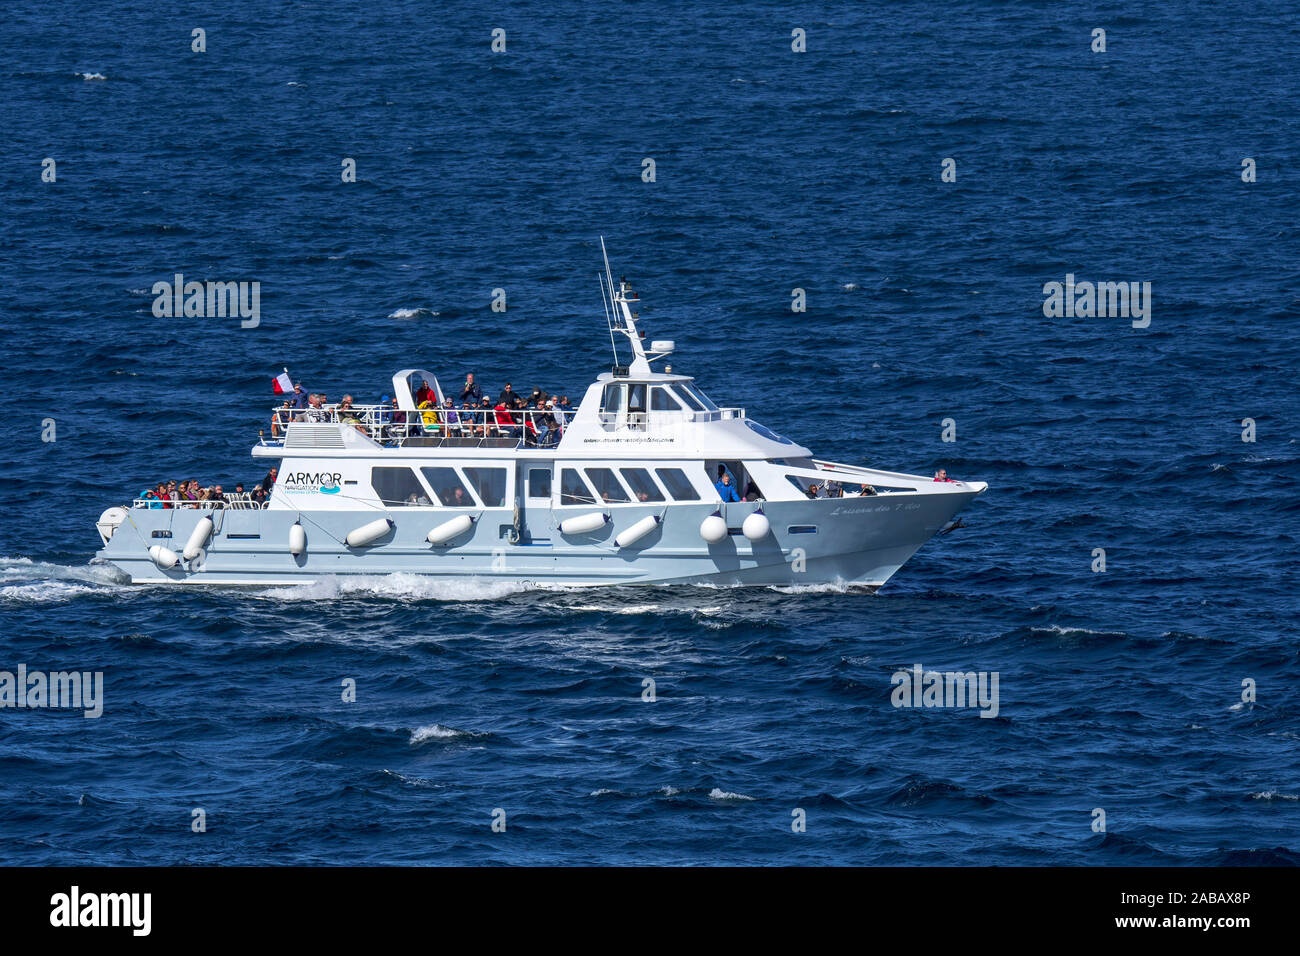 Ausflugsschiff Rüstung Navigation Segeln mit touristischen entlang der Côte de Granit rose/rosa Granit Küste zu den Sept-Iles Inseln, Côtes-d'Armor, Frankreich Stockfoto